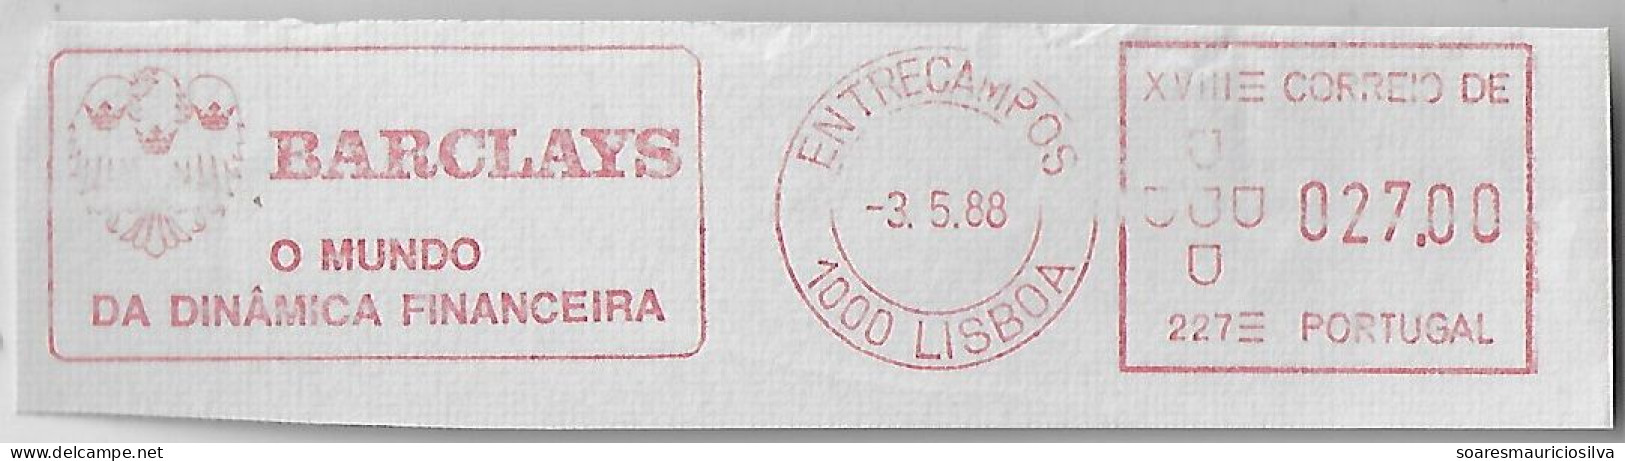 Portugal 1988 Fragment Meter Stamp Hasler Mailmaster Slogan Barclays The World Of Financial Dynamics Lisbon Entrecampos - Briefe U. Dokumente